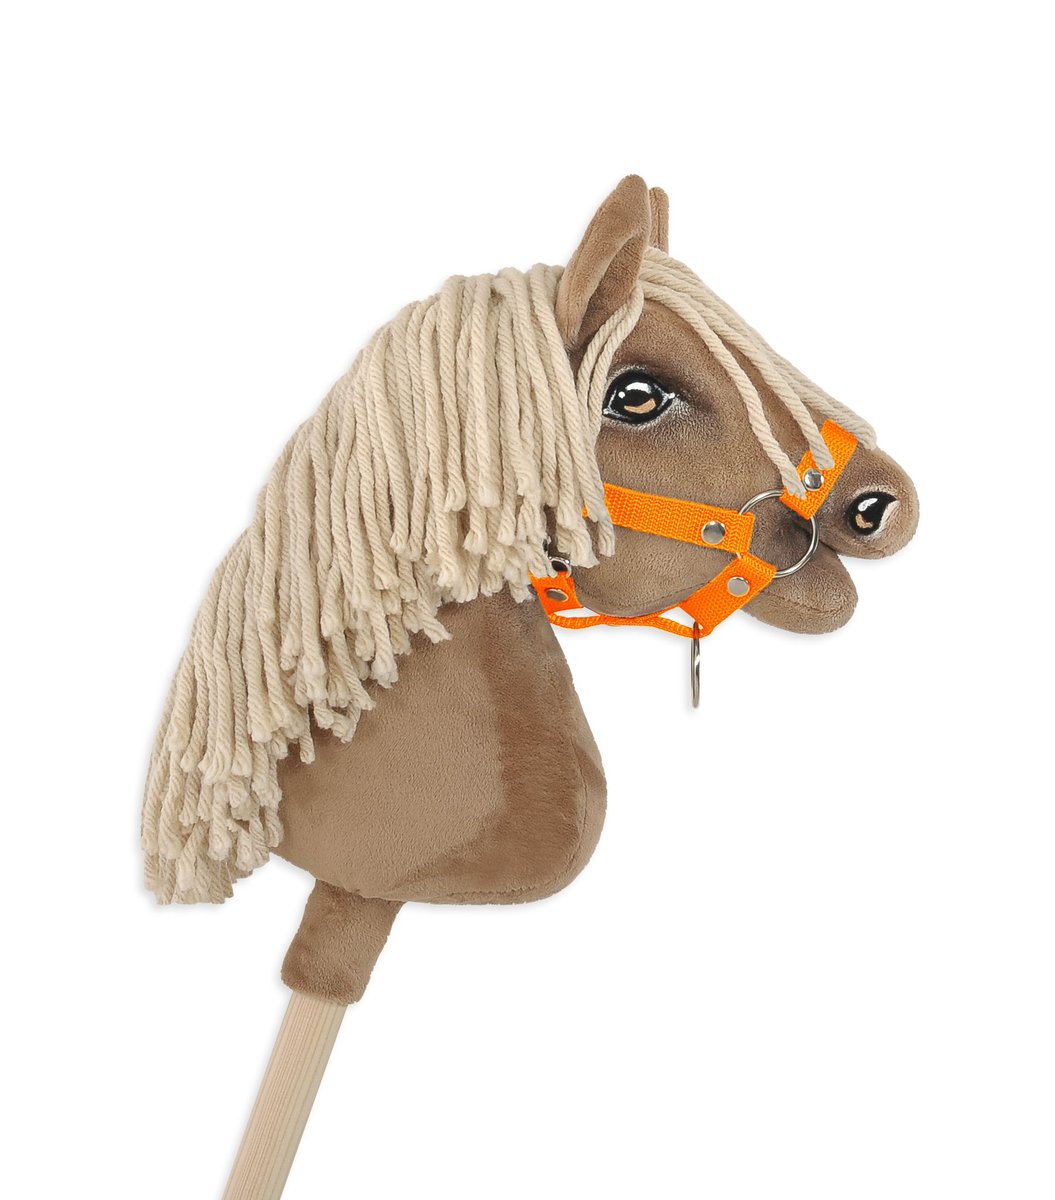 Zdjęcia - Maskotka Hobby Kantar dla konia  Horse A4 zapinany mały - neon orange 